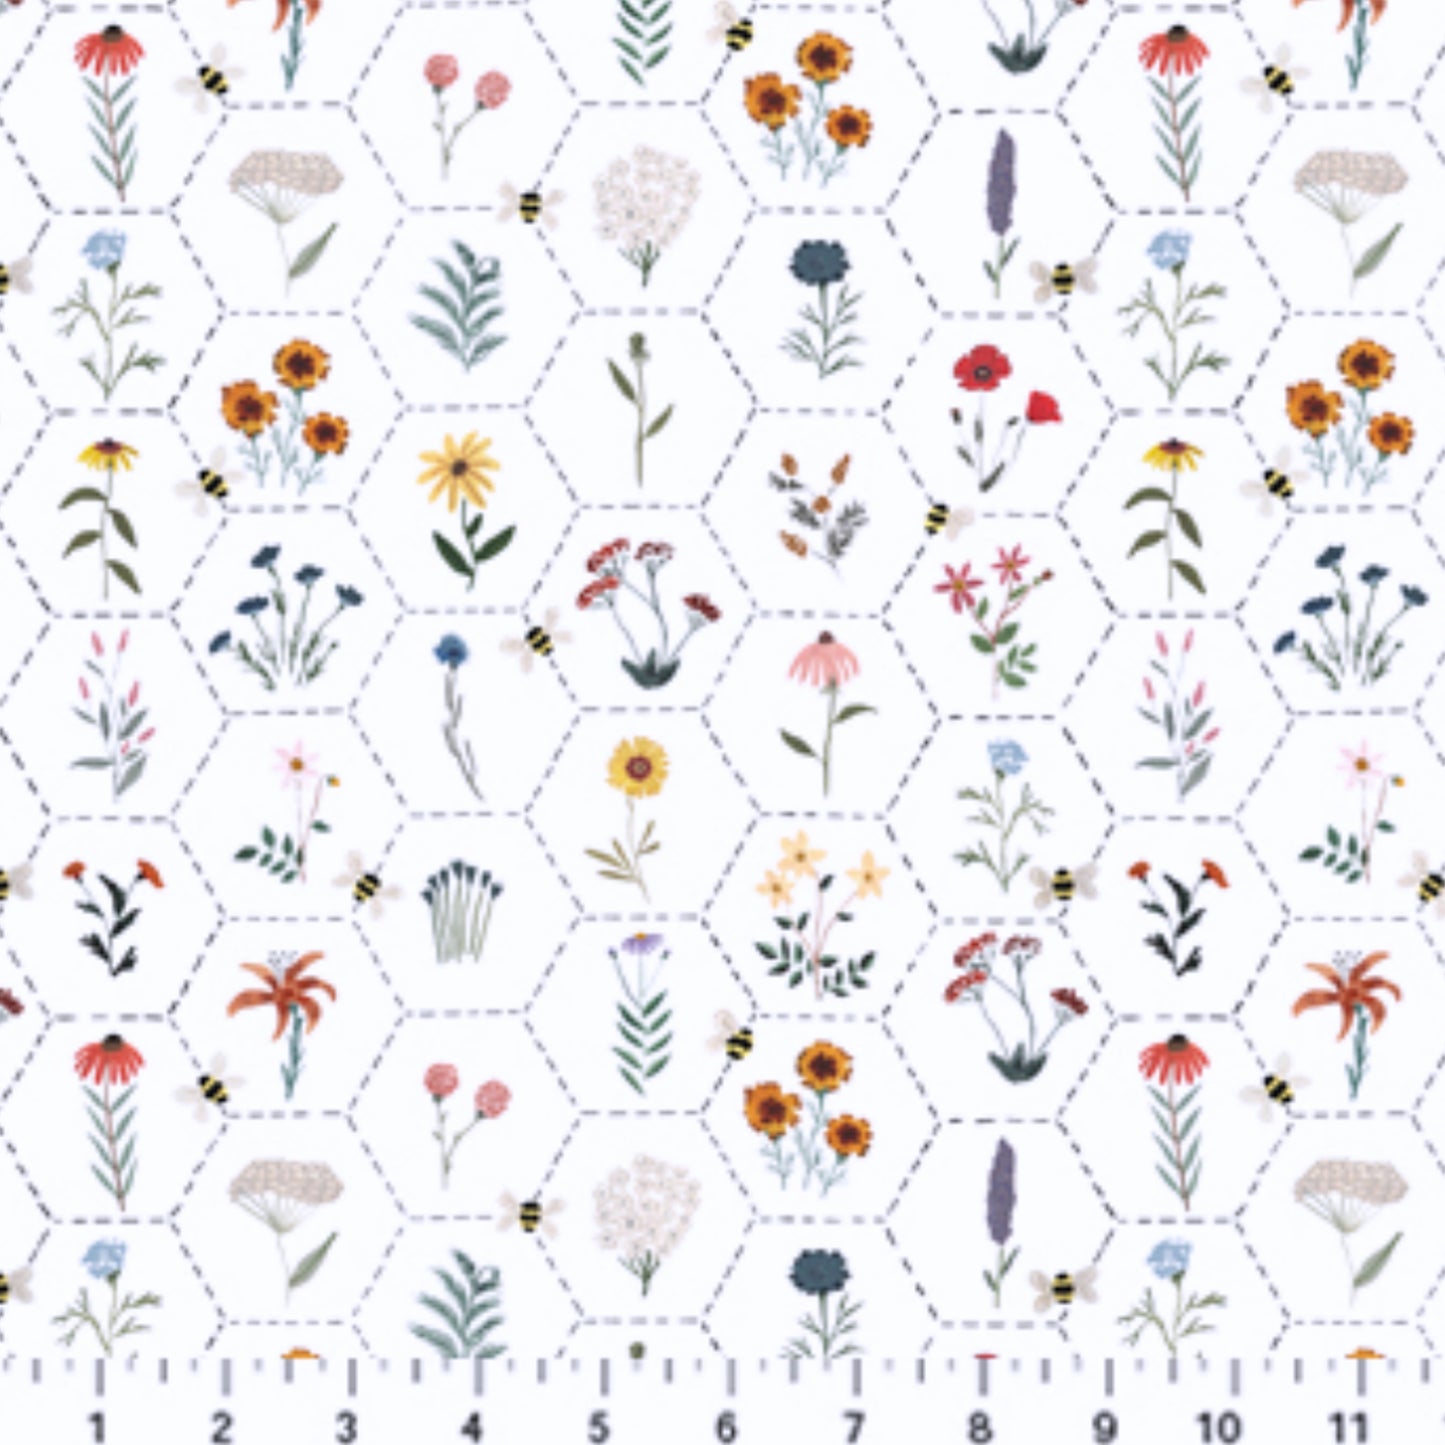 Hexie Floral - Eden Collection - Bocciccini Meadows for Figo Fabrics